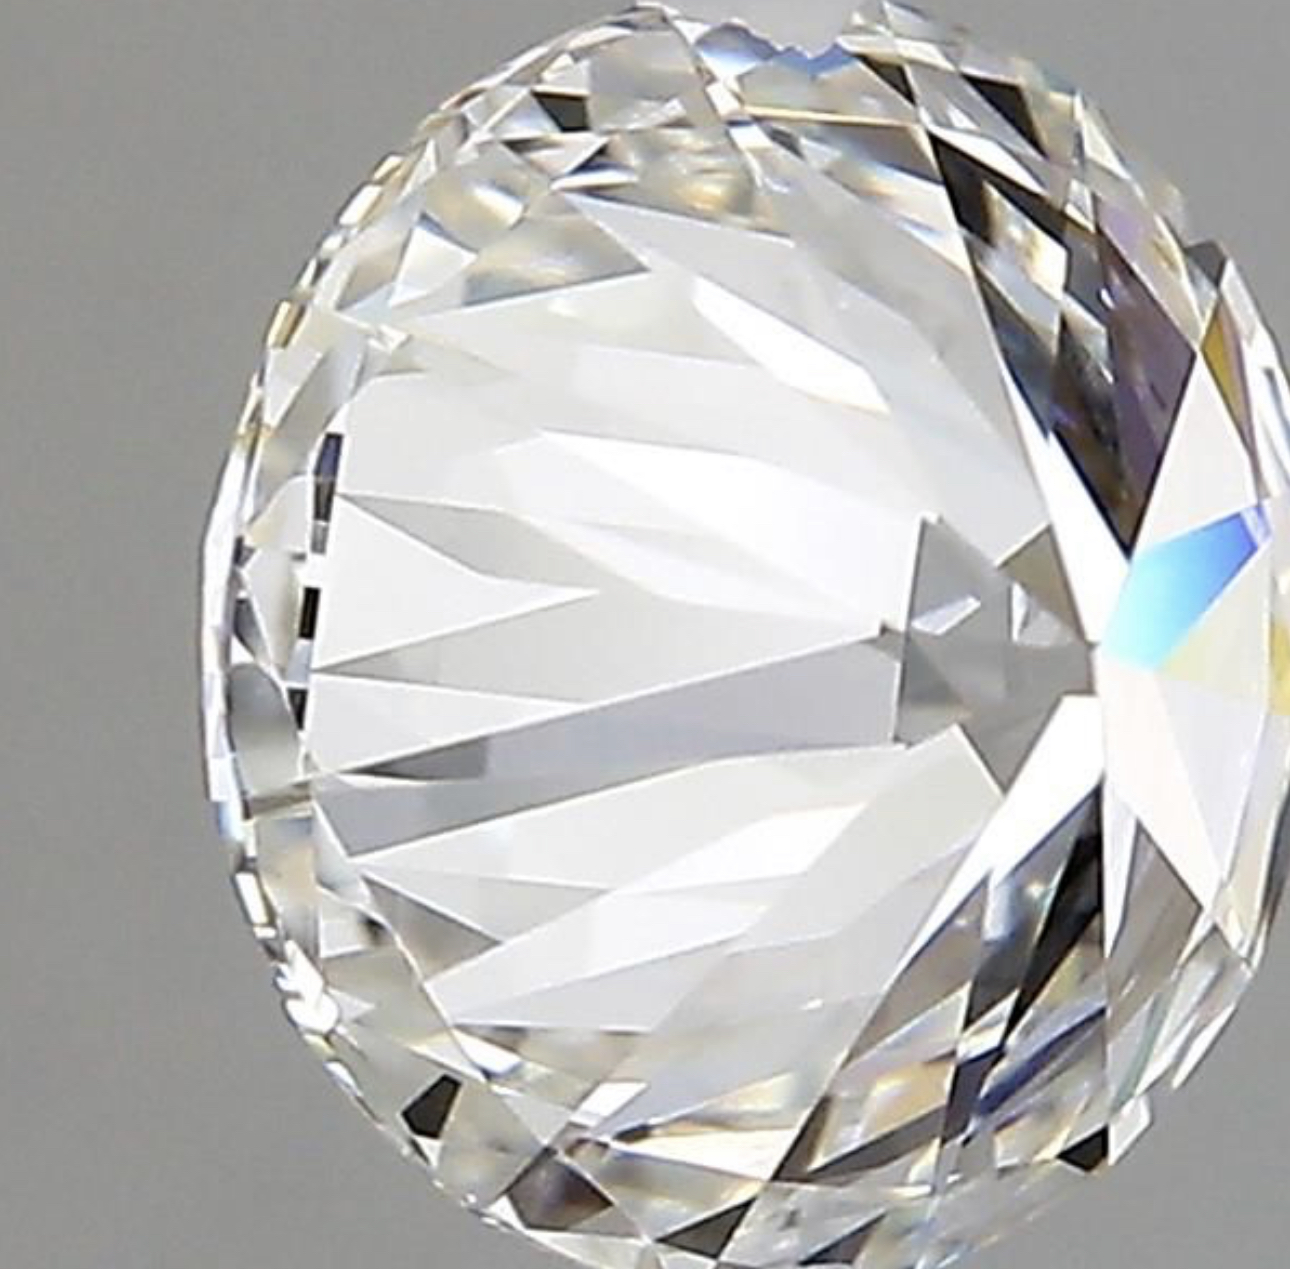 Round Brilliant Cut Diamond F Colour VVS2 Clarity 2.13 Carat EX EX - 7441888947 - GIA - Image 5 of 10